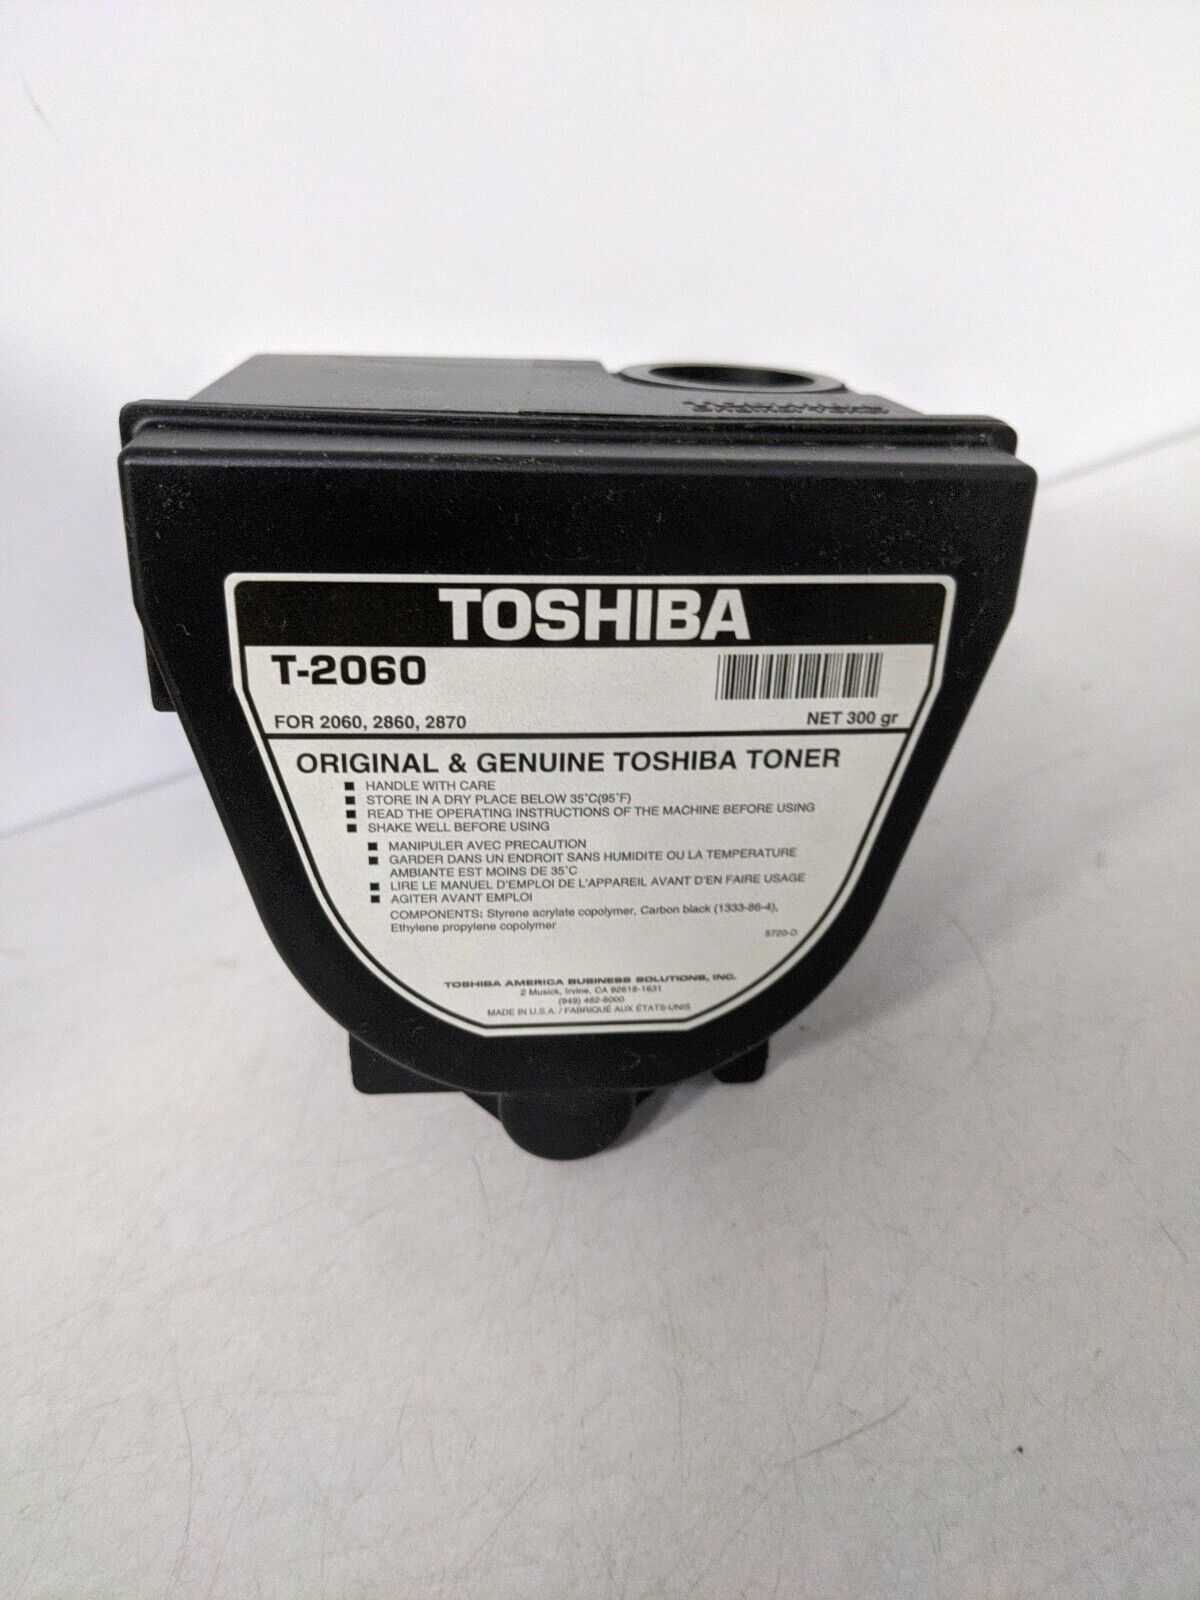 ORIGINAL & GENUINE TOSHIBA TONER T-2060 - FOR 2060,2860,2870 300gr